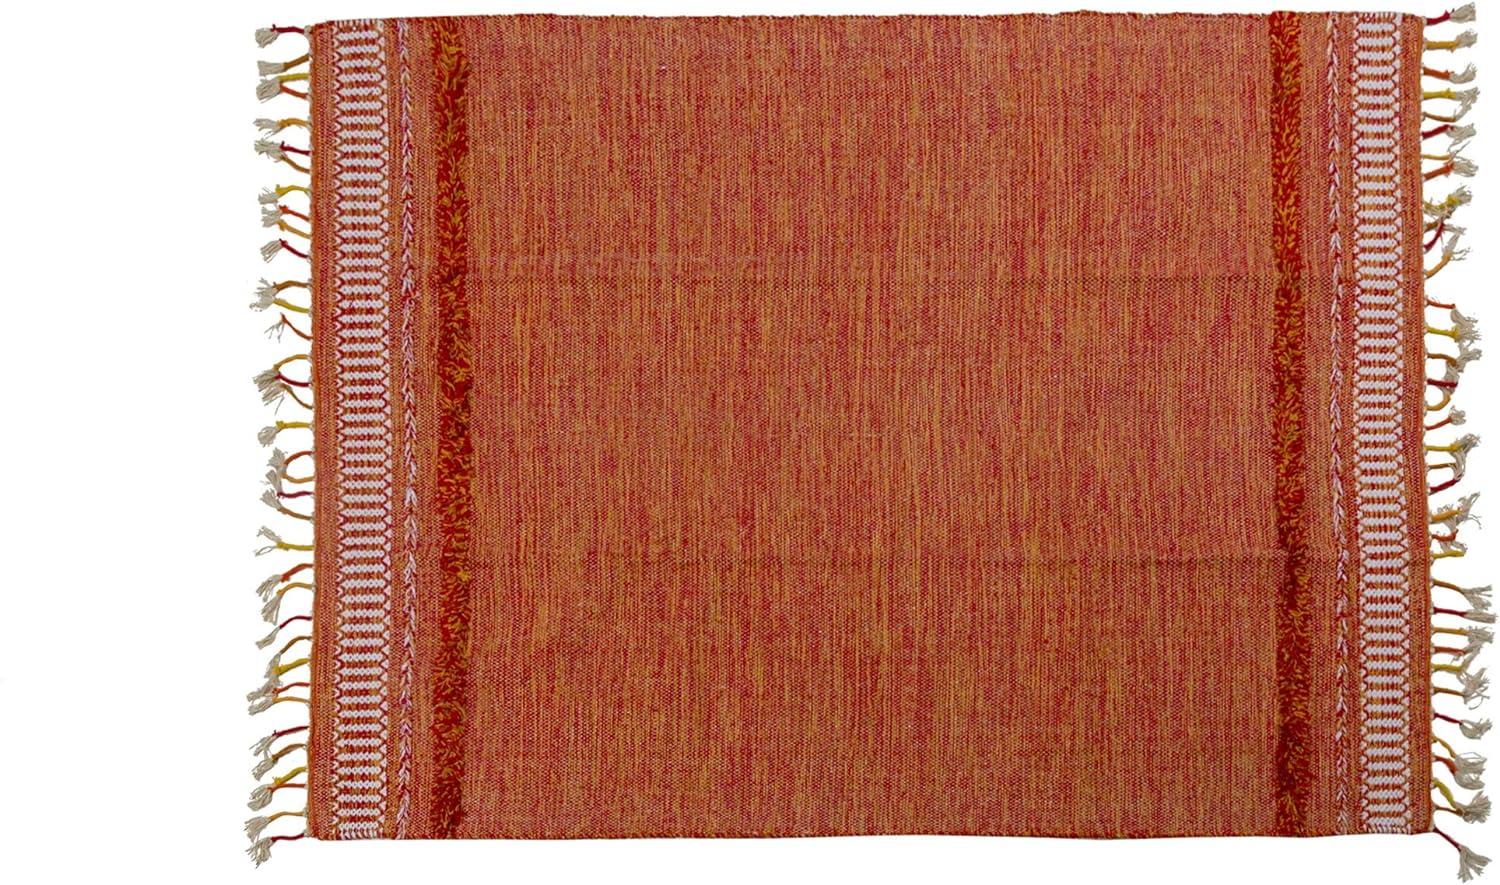 Dmora Moderner Boston-Teppich, Kelim-Stil, 100% Baumwolle, orange, 200x140cm Bild 1